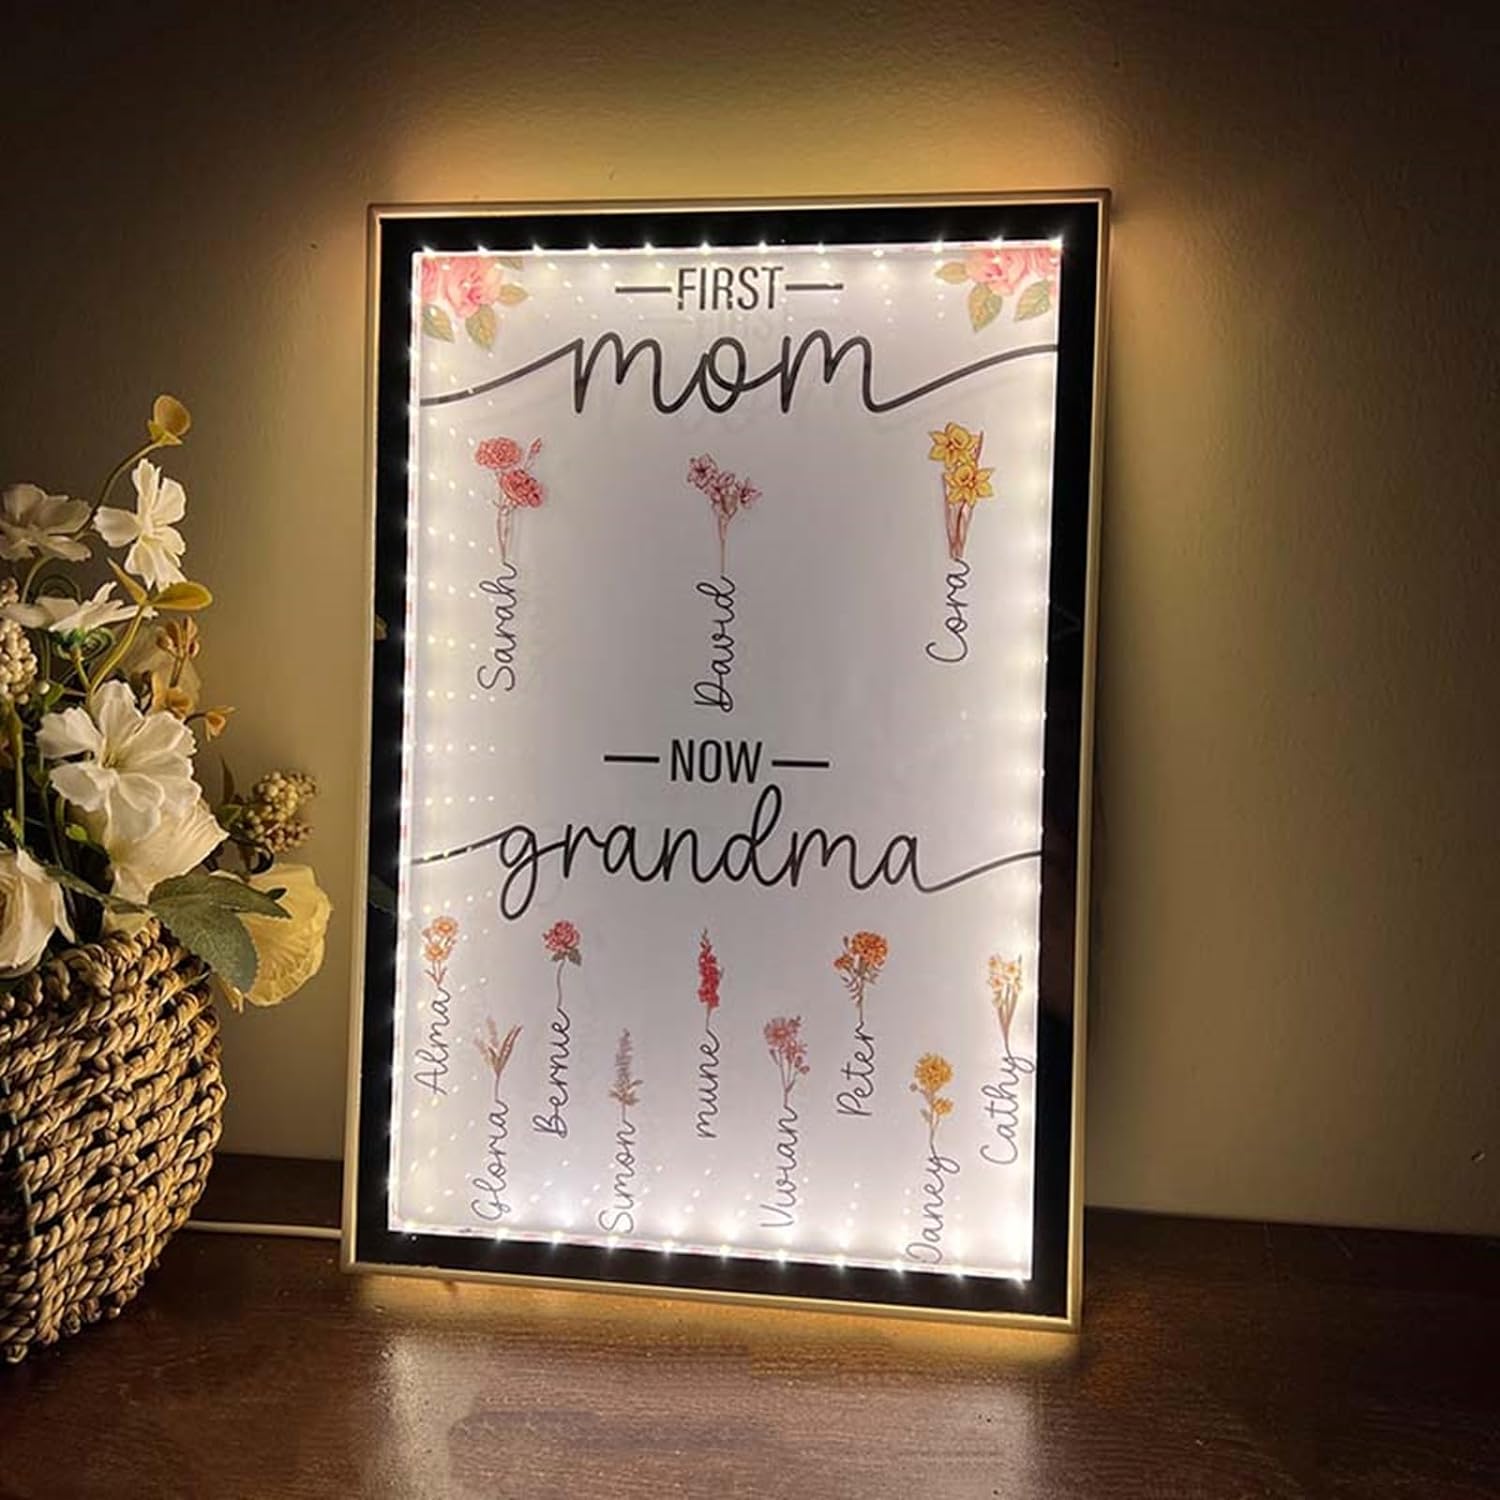 Lampada da specchio personalizzata con nome a LED per specchio per la festa della mamma, luce notturna personalizzata per la prima mamma e ora per la nonna 